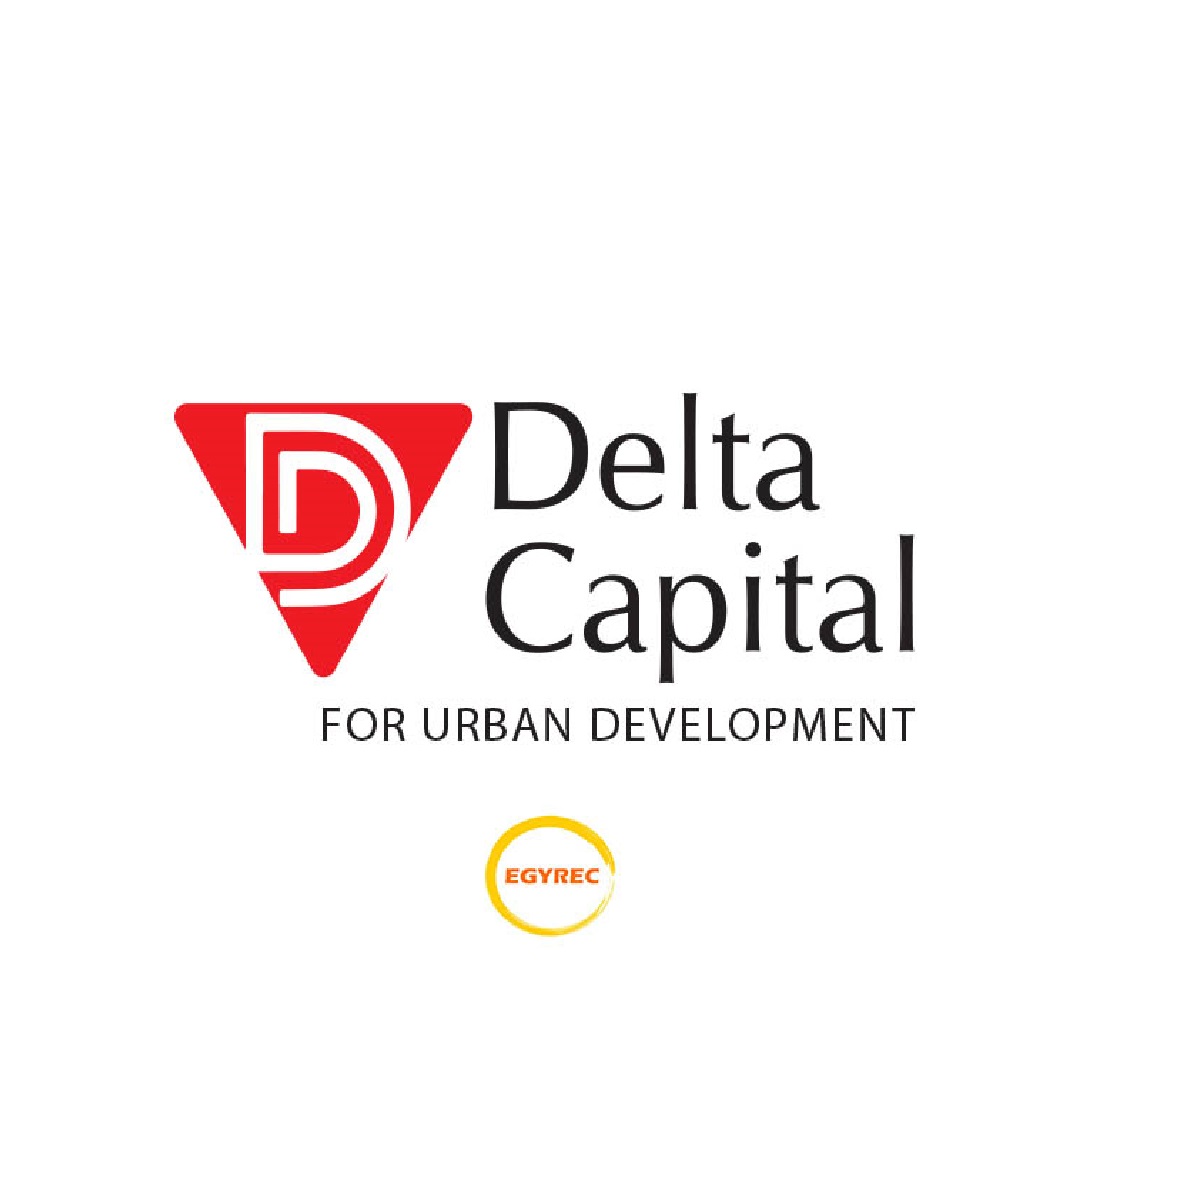 Delta capital